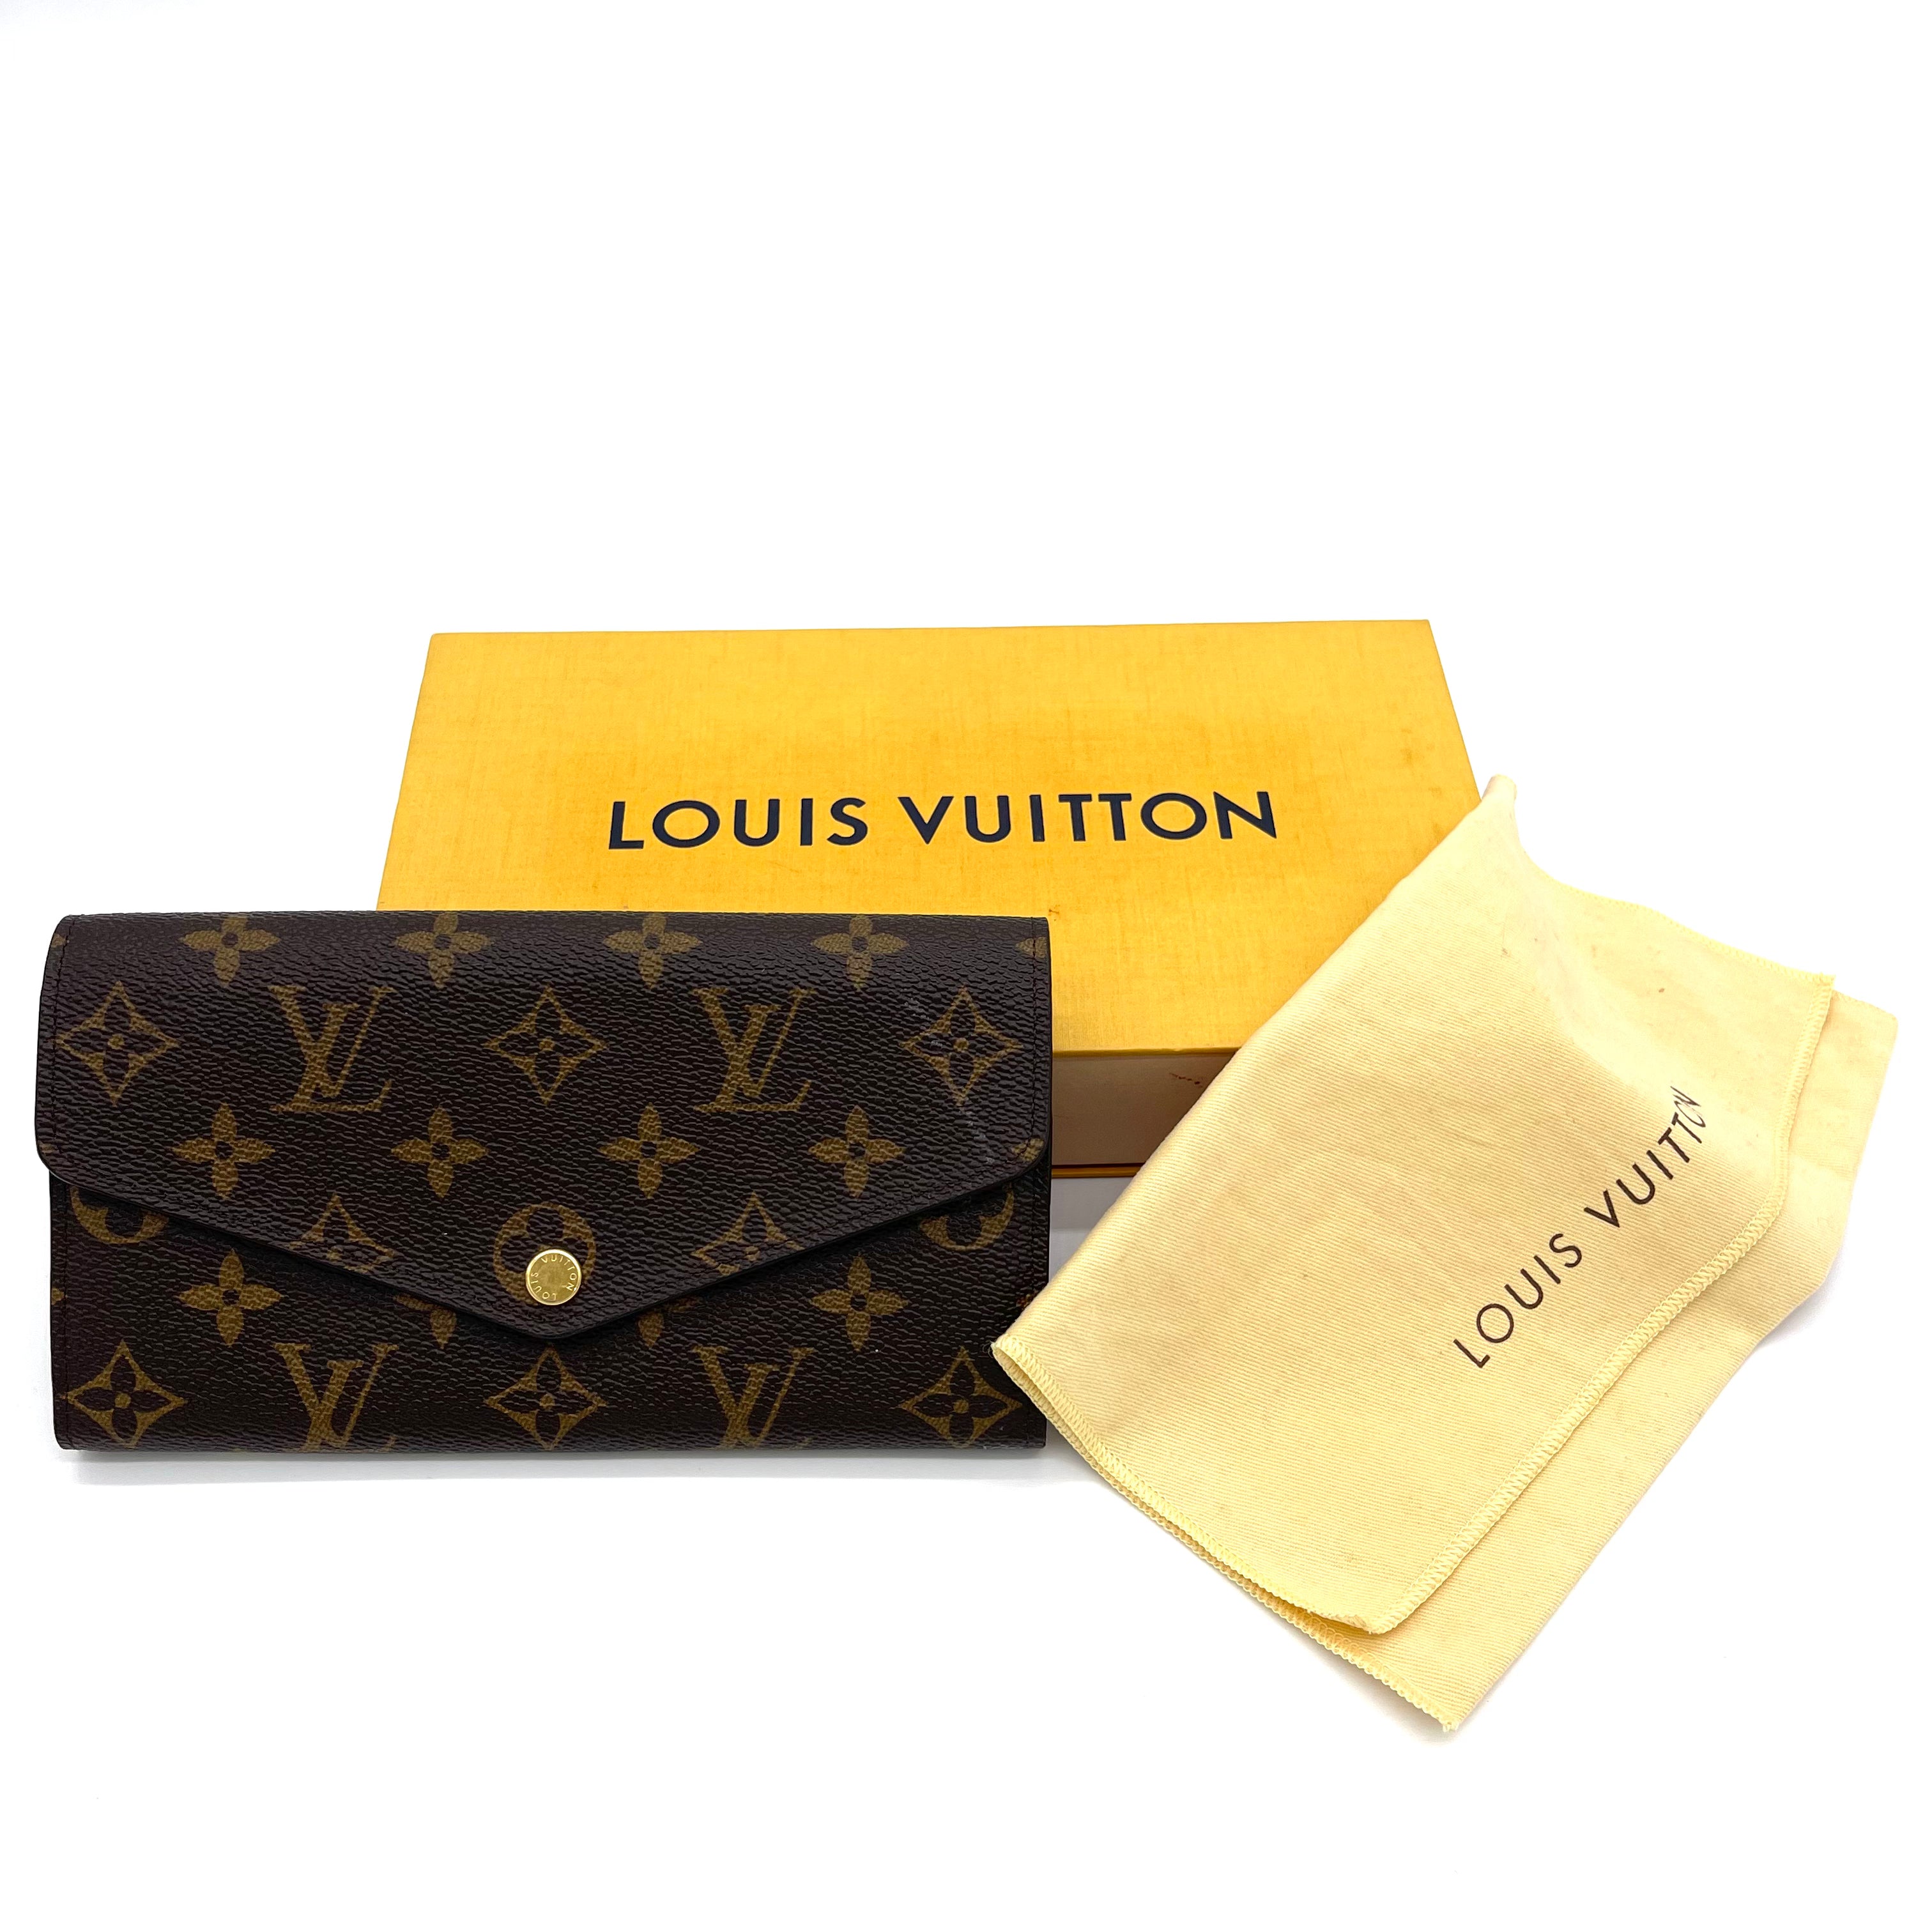 Louis Vuitton Sarah Monogram Canvas Wallet